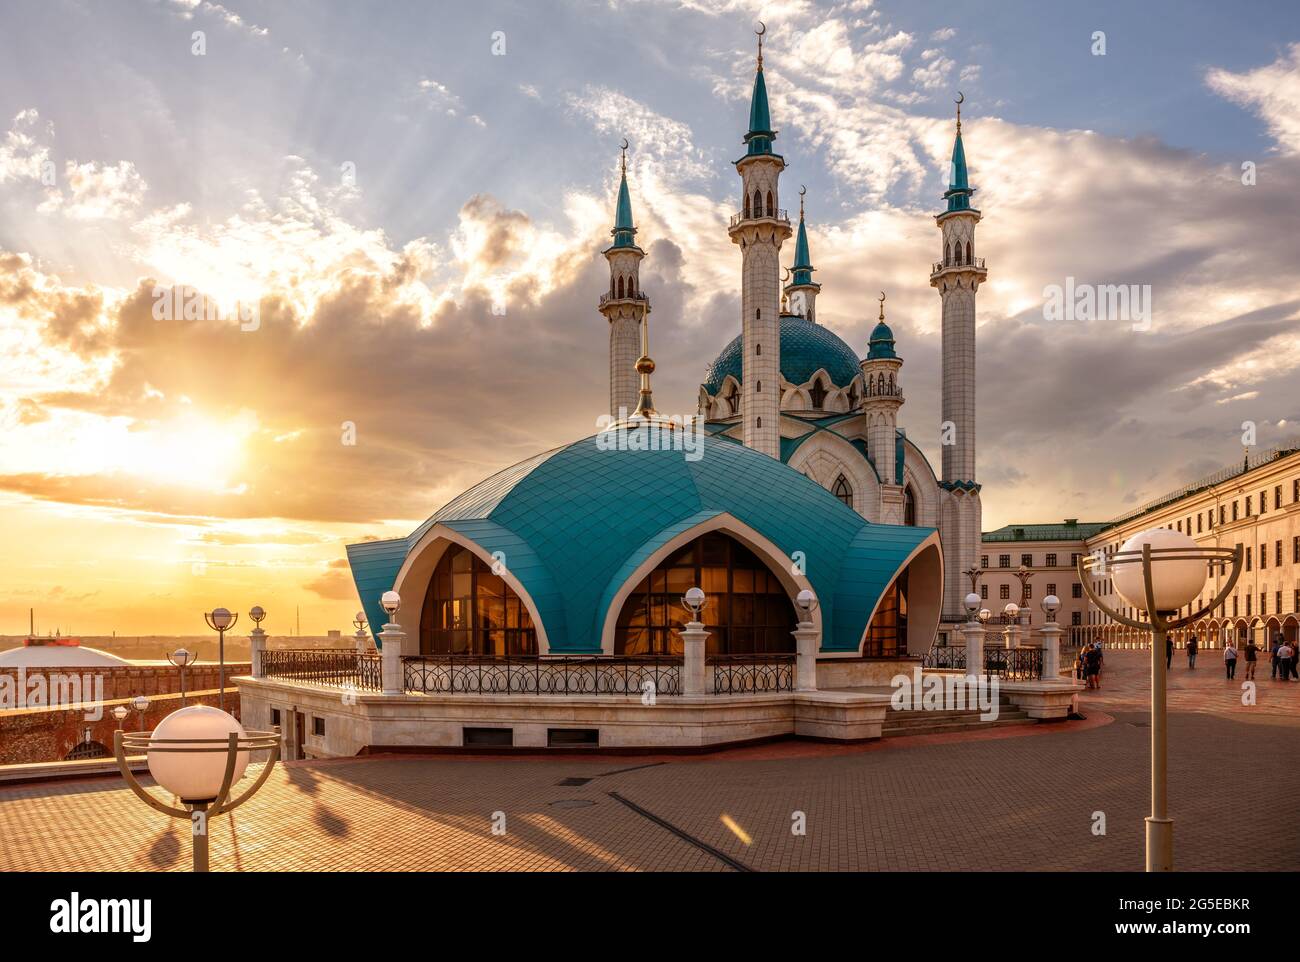 Kasan Kreml bei Sonnenuntergang, Tatarstan, Russland. Sonniger Blick auf die Kul Sharif Moschee, großes Wahrzeichen von Kazan. Berühmte Touristenattraktion, islamische Architektur Stockfoto